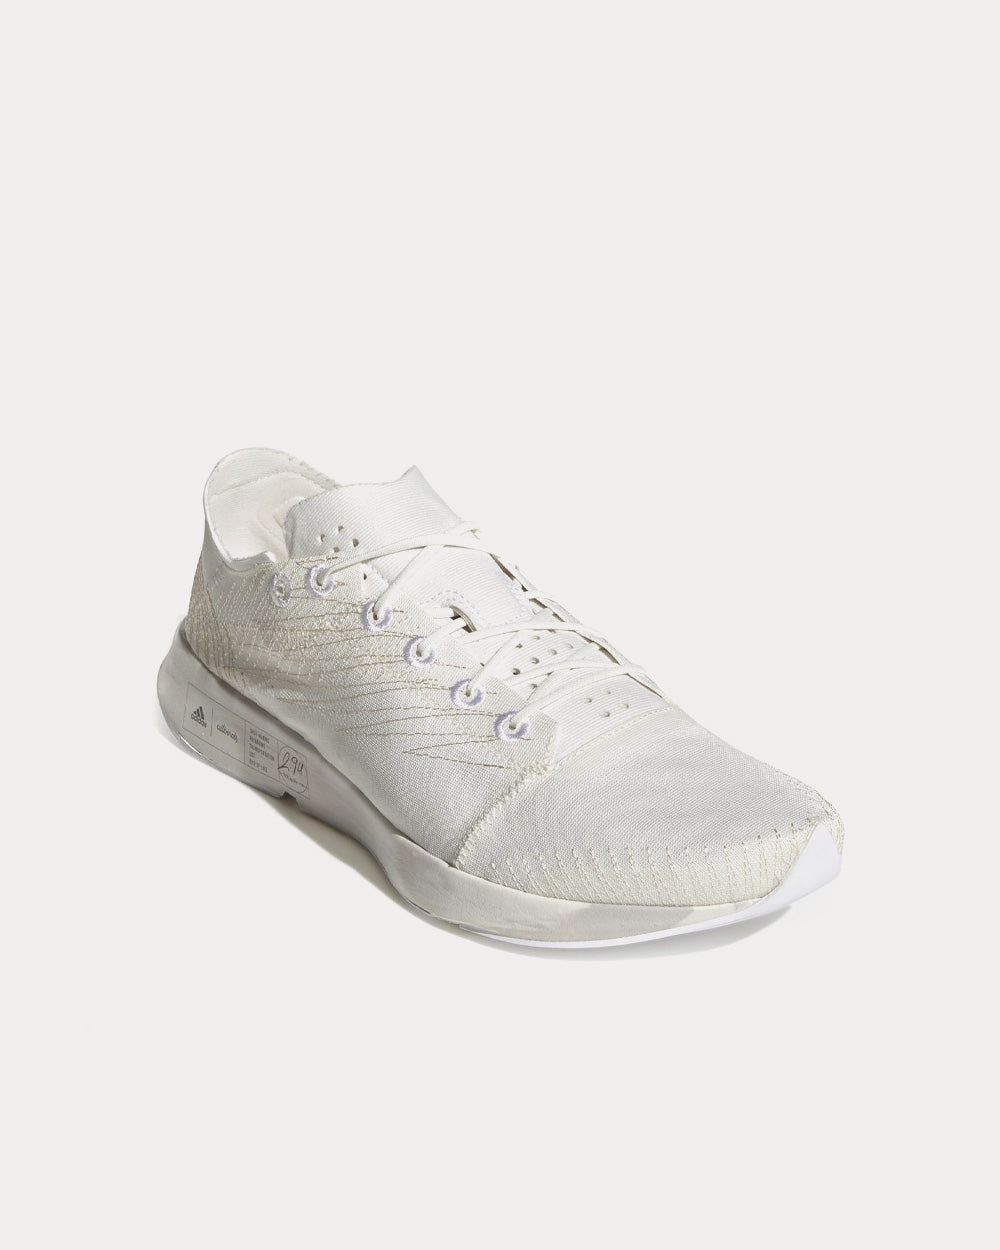 Adidas x Allbirds - FutureCraft Footprint  Non Dyed / Cloud White / Ecru Tint Running Shoes